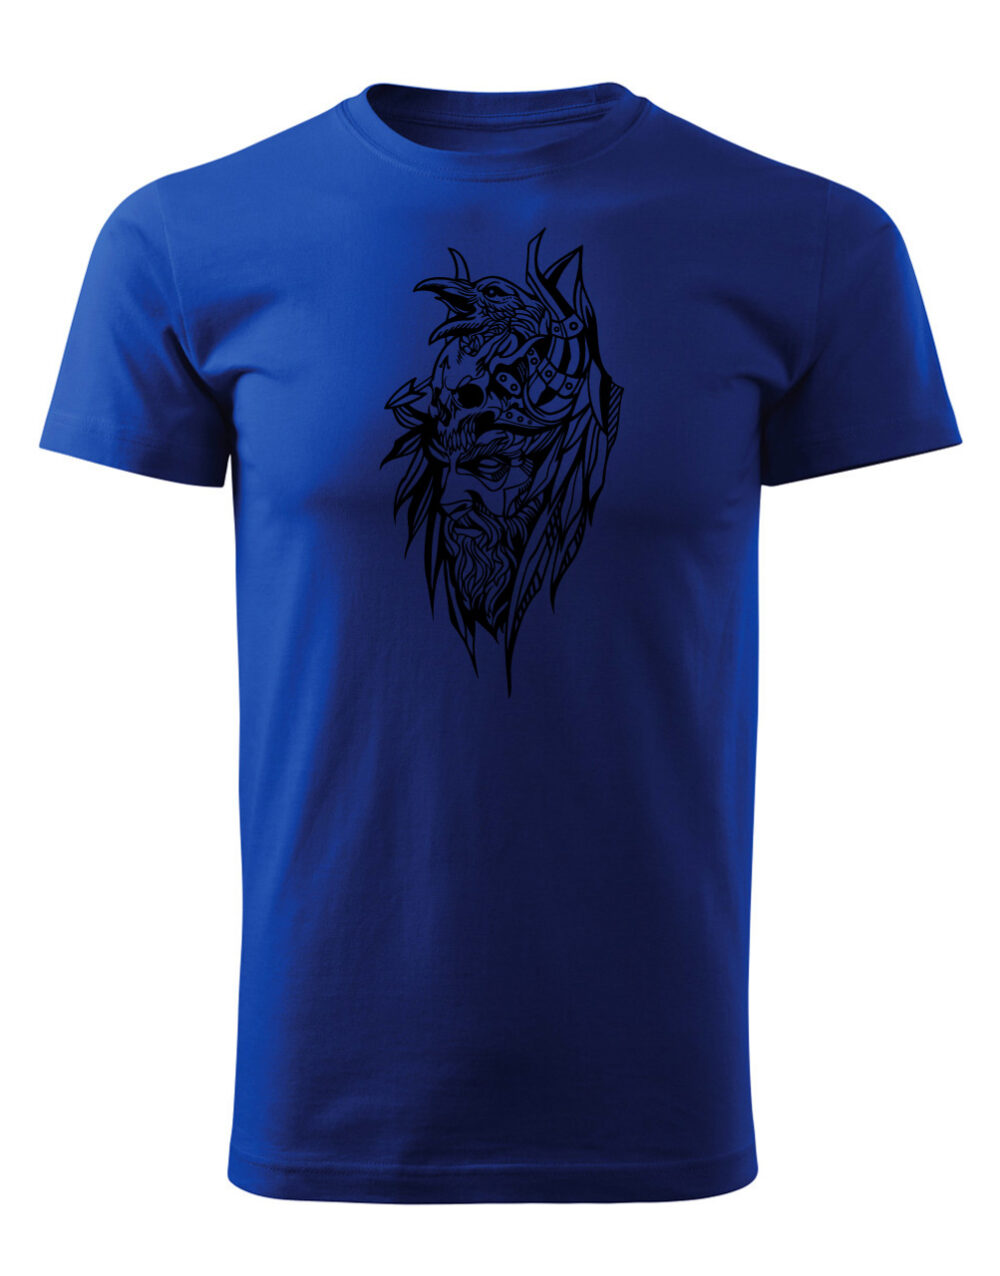 Pánské tričko s potiskem Bojovník královská modrá